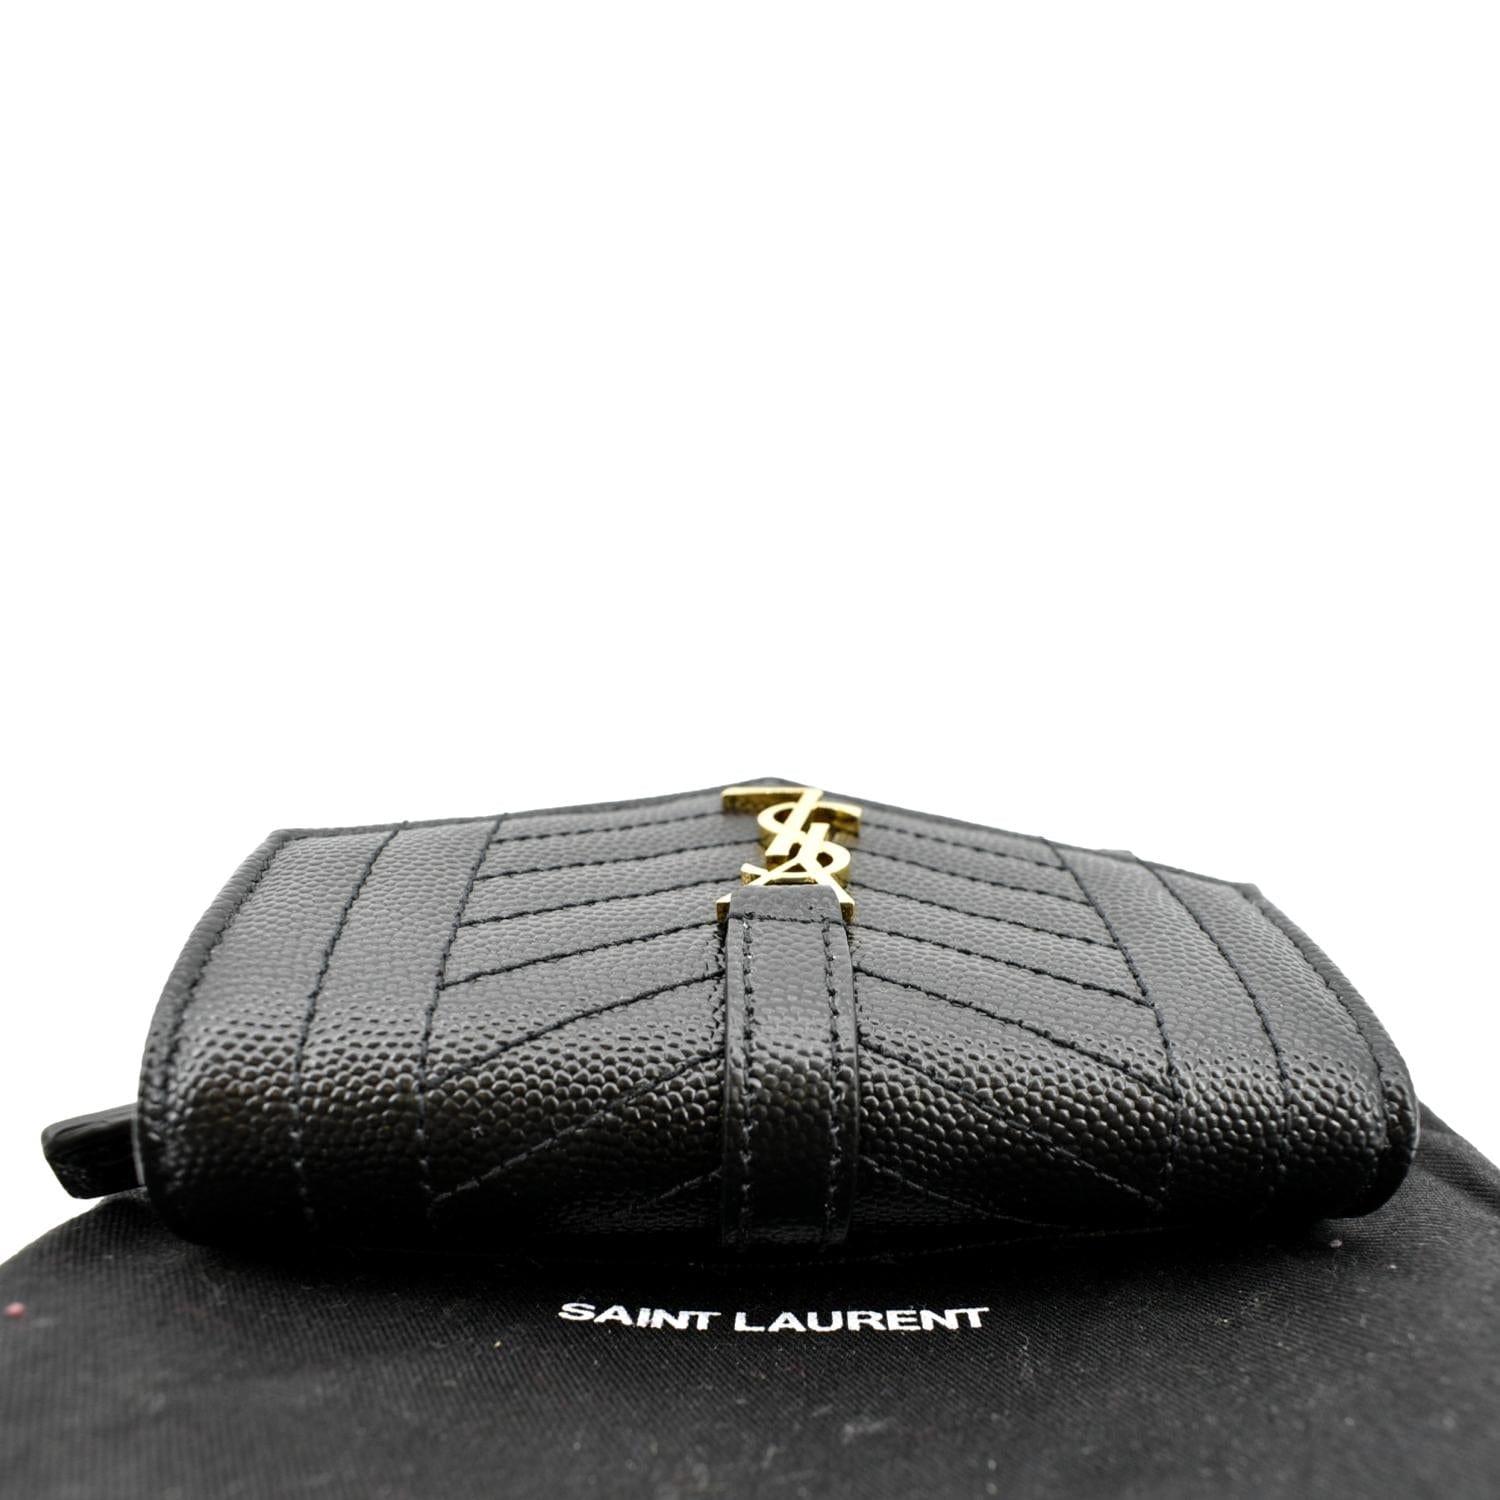 Saint Laurent - Women's 'Gaby' Shoulder Bag - Black - Leather